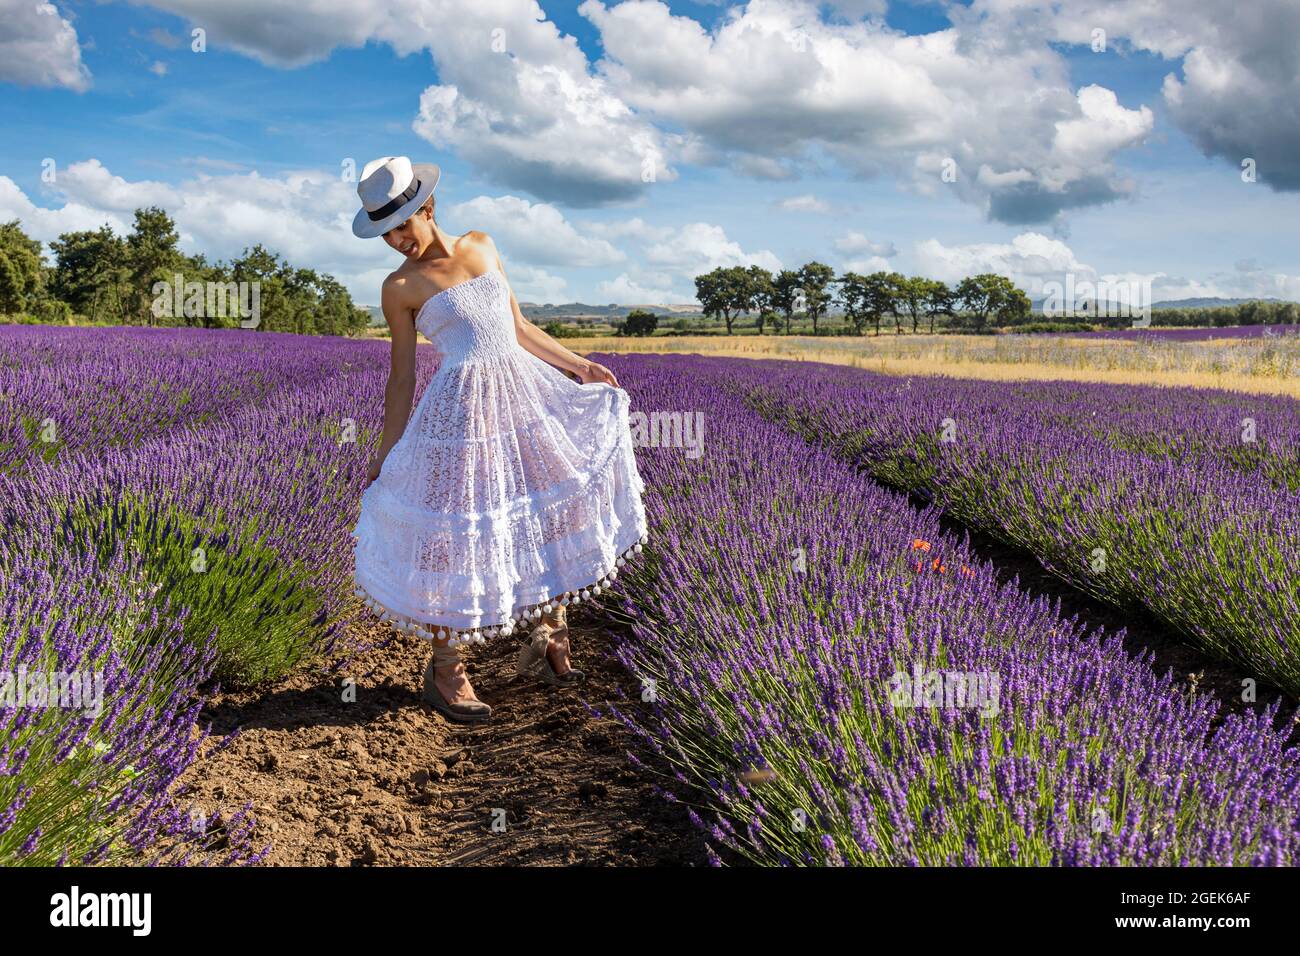 Schöne Frau posiert in einem blühenden Lavendelfeld mit ihrem weißen Kleid und Hut. Konzept von Freiheit und Spaß. Stockfoto